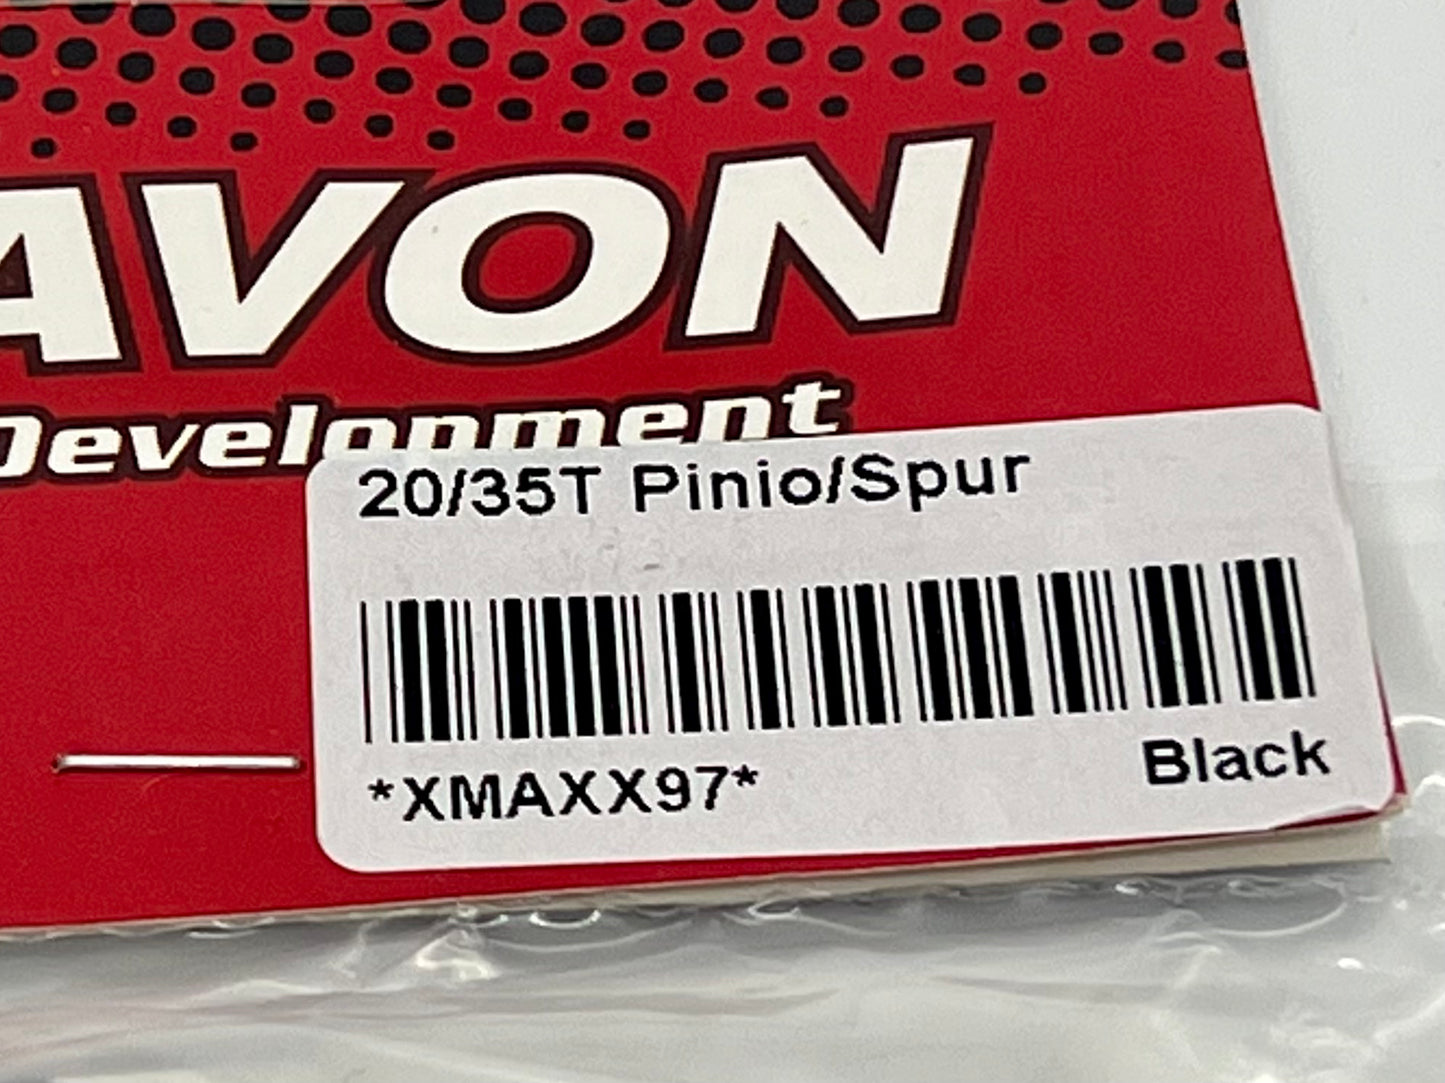 VITAVON CNC 45# HD 1.5Mod 20/35T Pinion/Spur Gear for X MAXX XRT 1/5